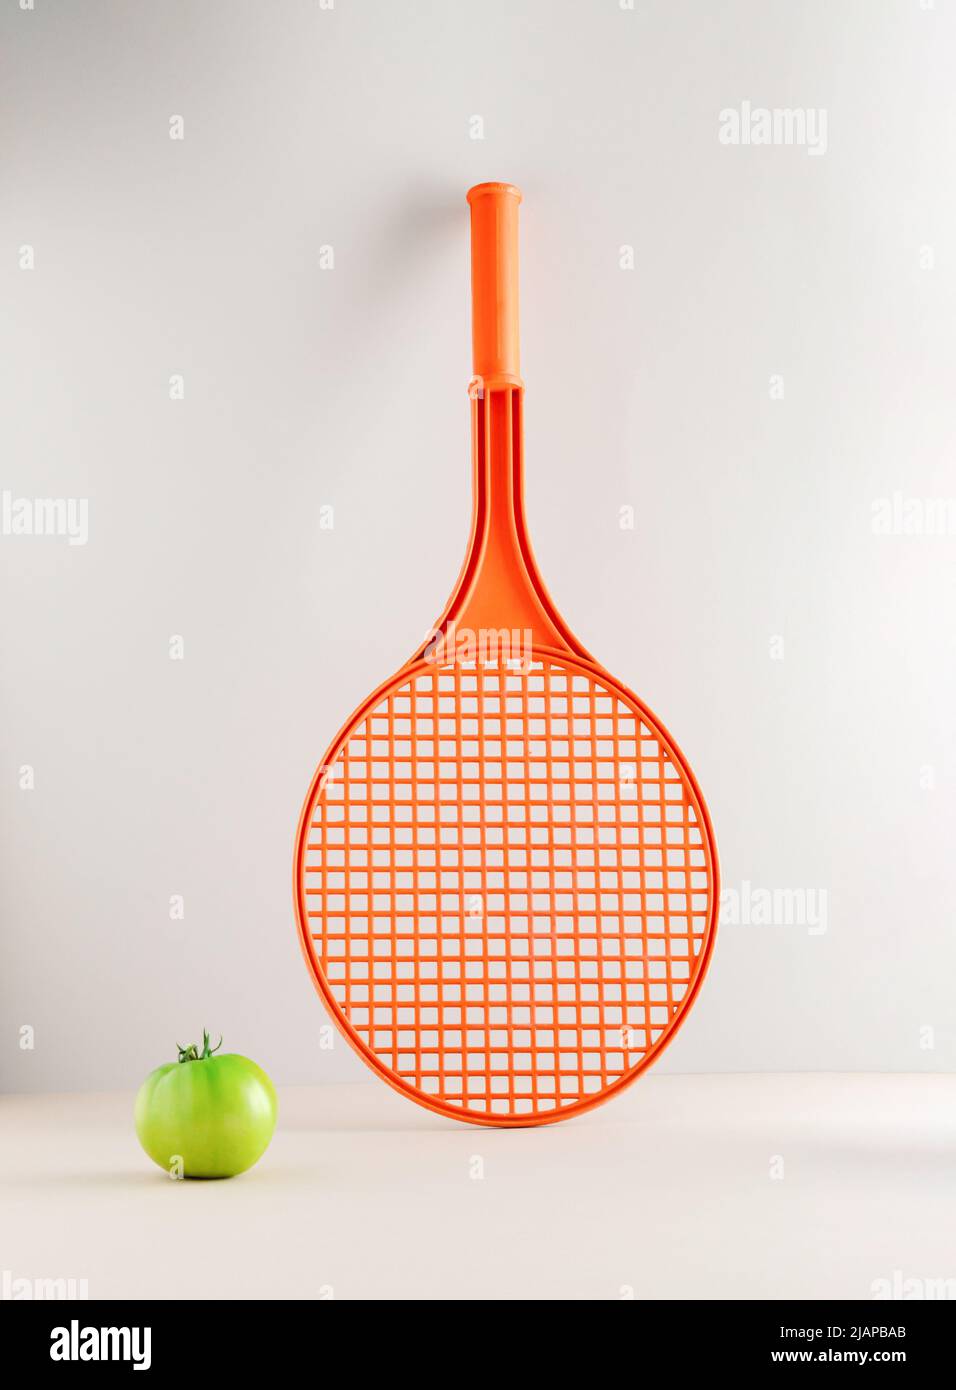 Una racchetta da tennis e un pomodoro verde non maturo su sfondo grigio. Concetto sportivo minimo. Foto Stock